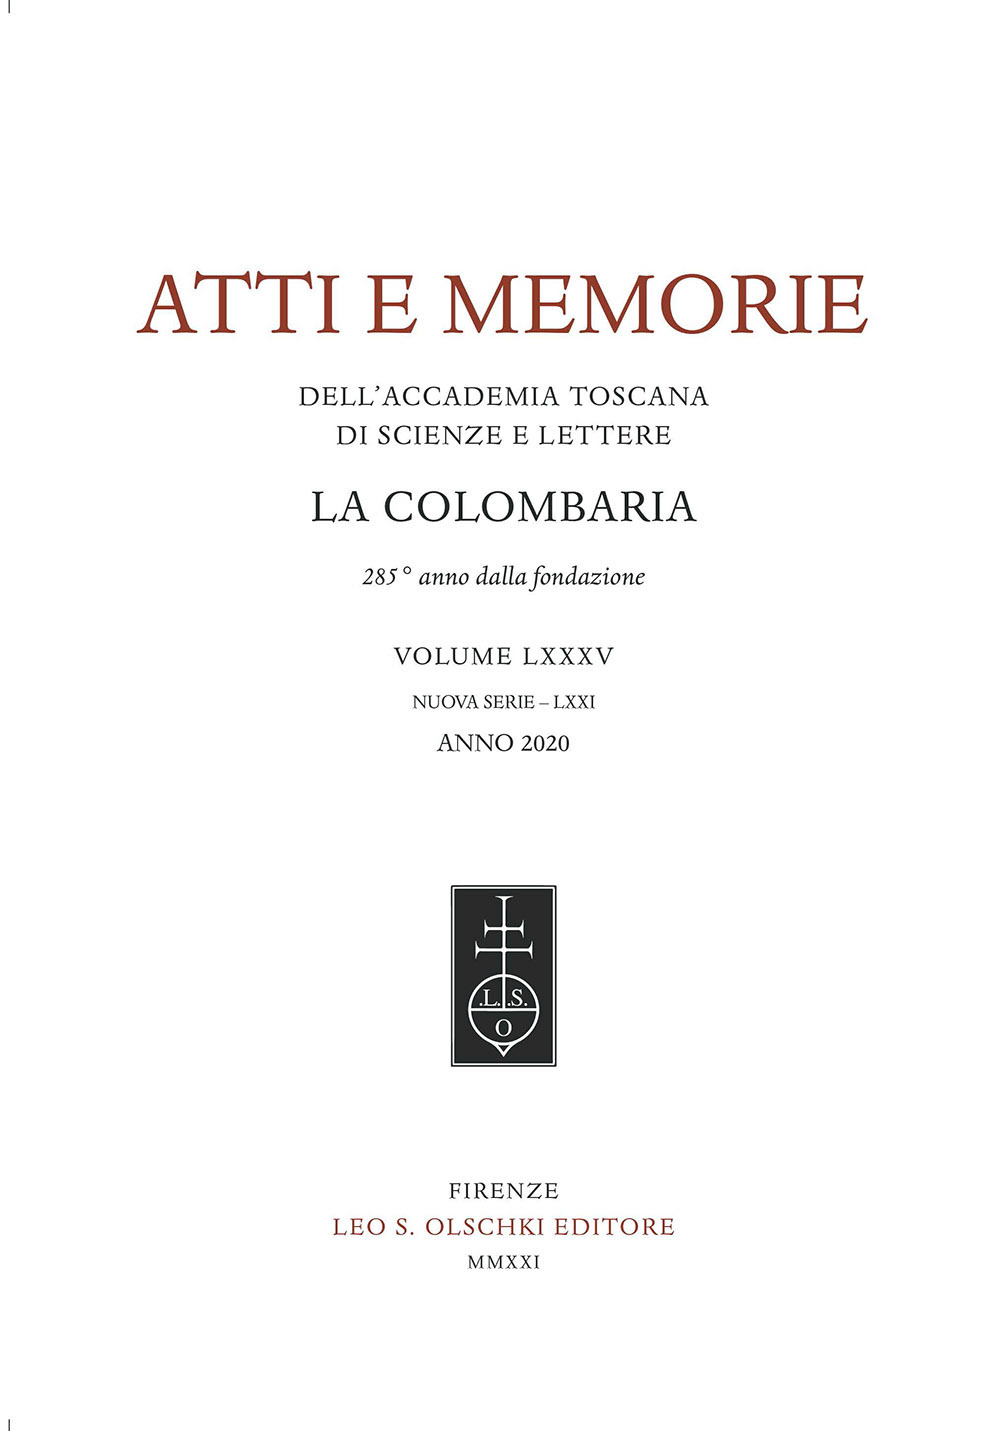 Atti e memorie dell'Accademia toscana di scienze e lettere «La Colombaria». Nuova serie. Vol. 85